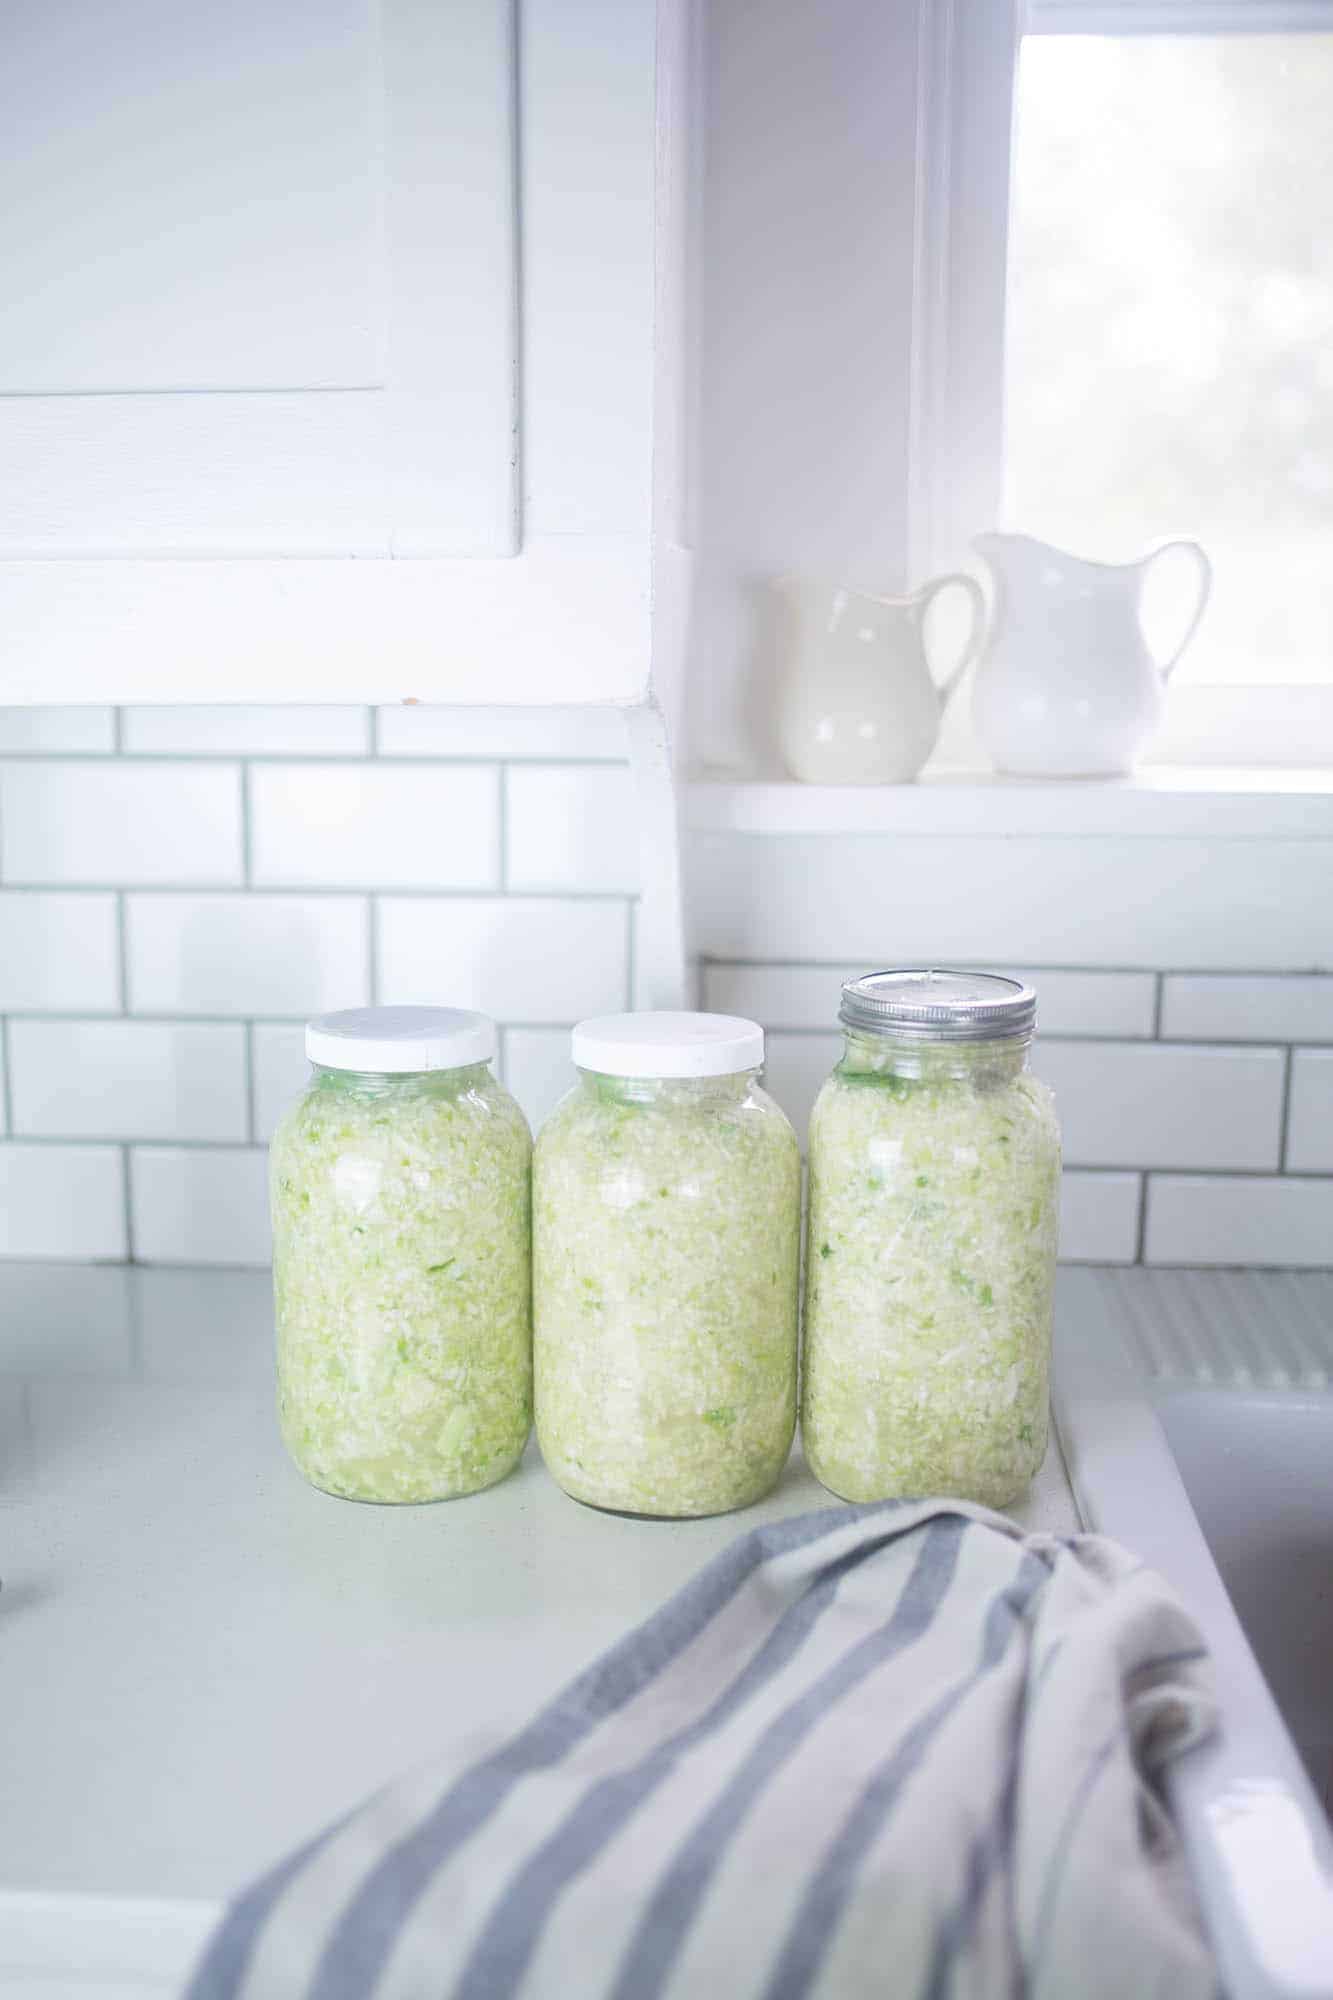 3 half gallon jars of homemade sauerkraut on a kitchen countertop 